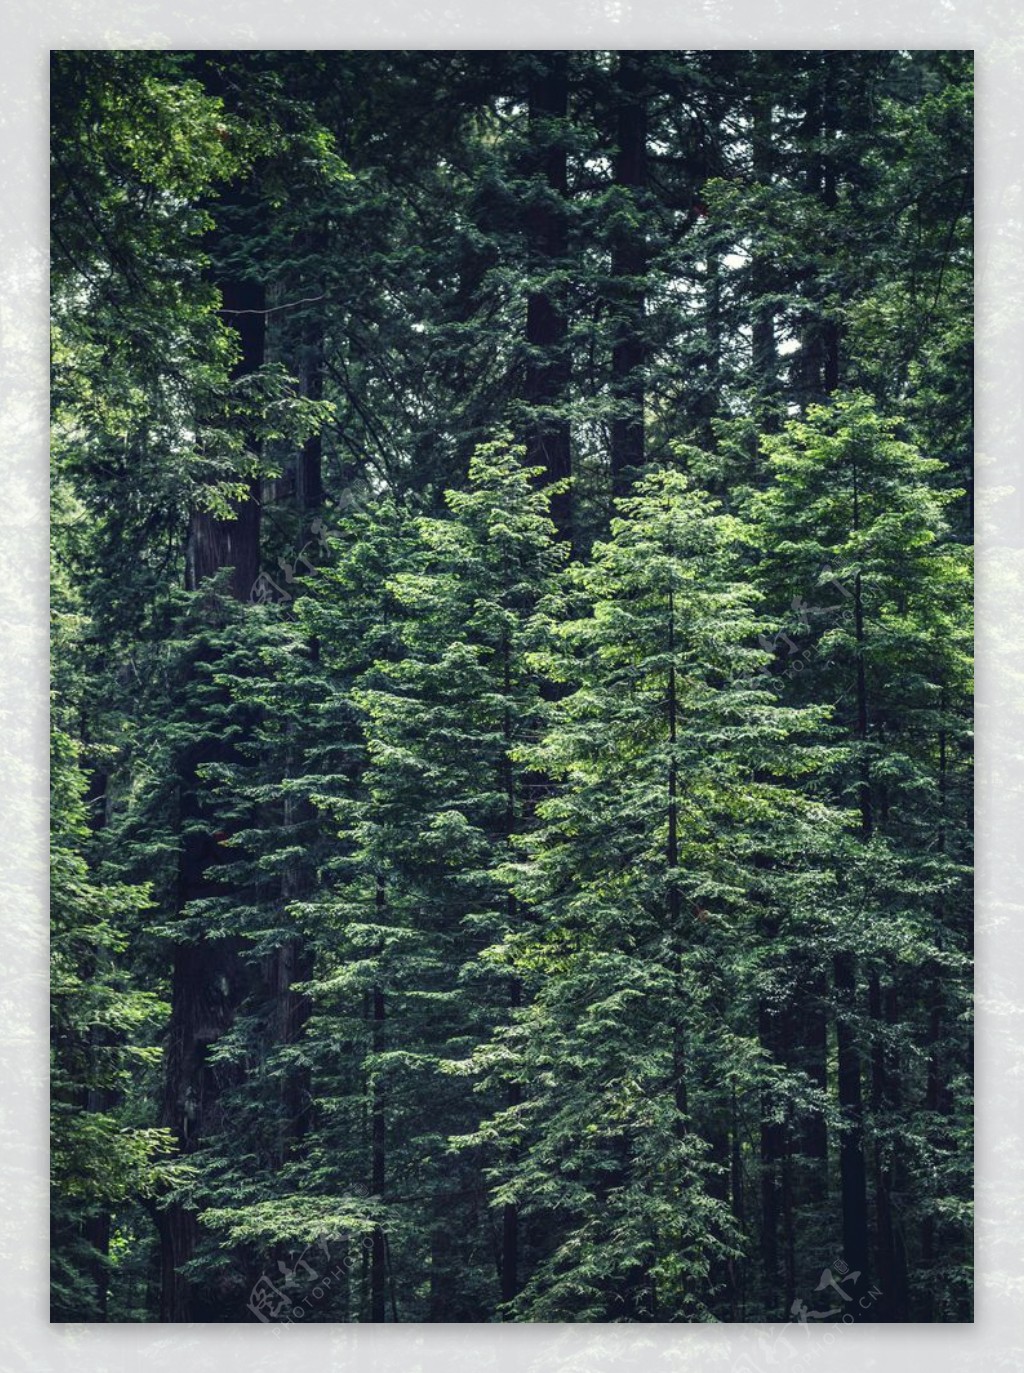 森林图片